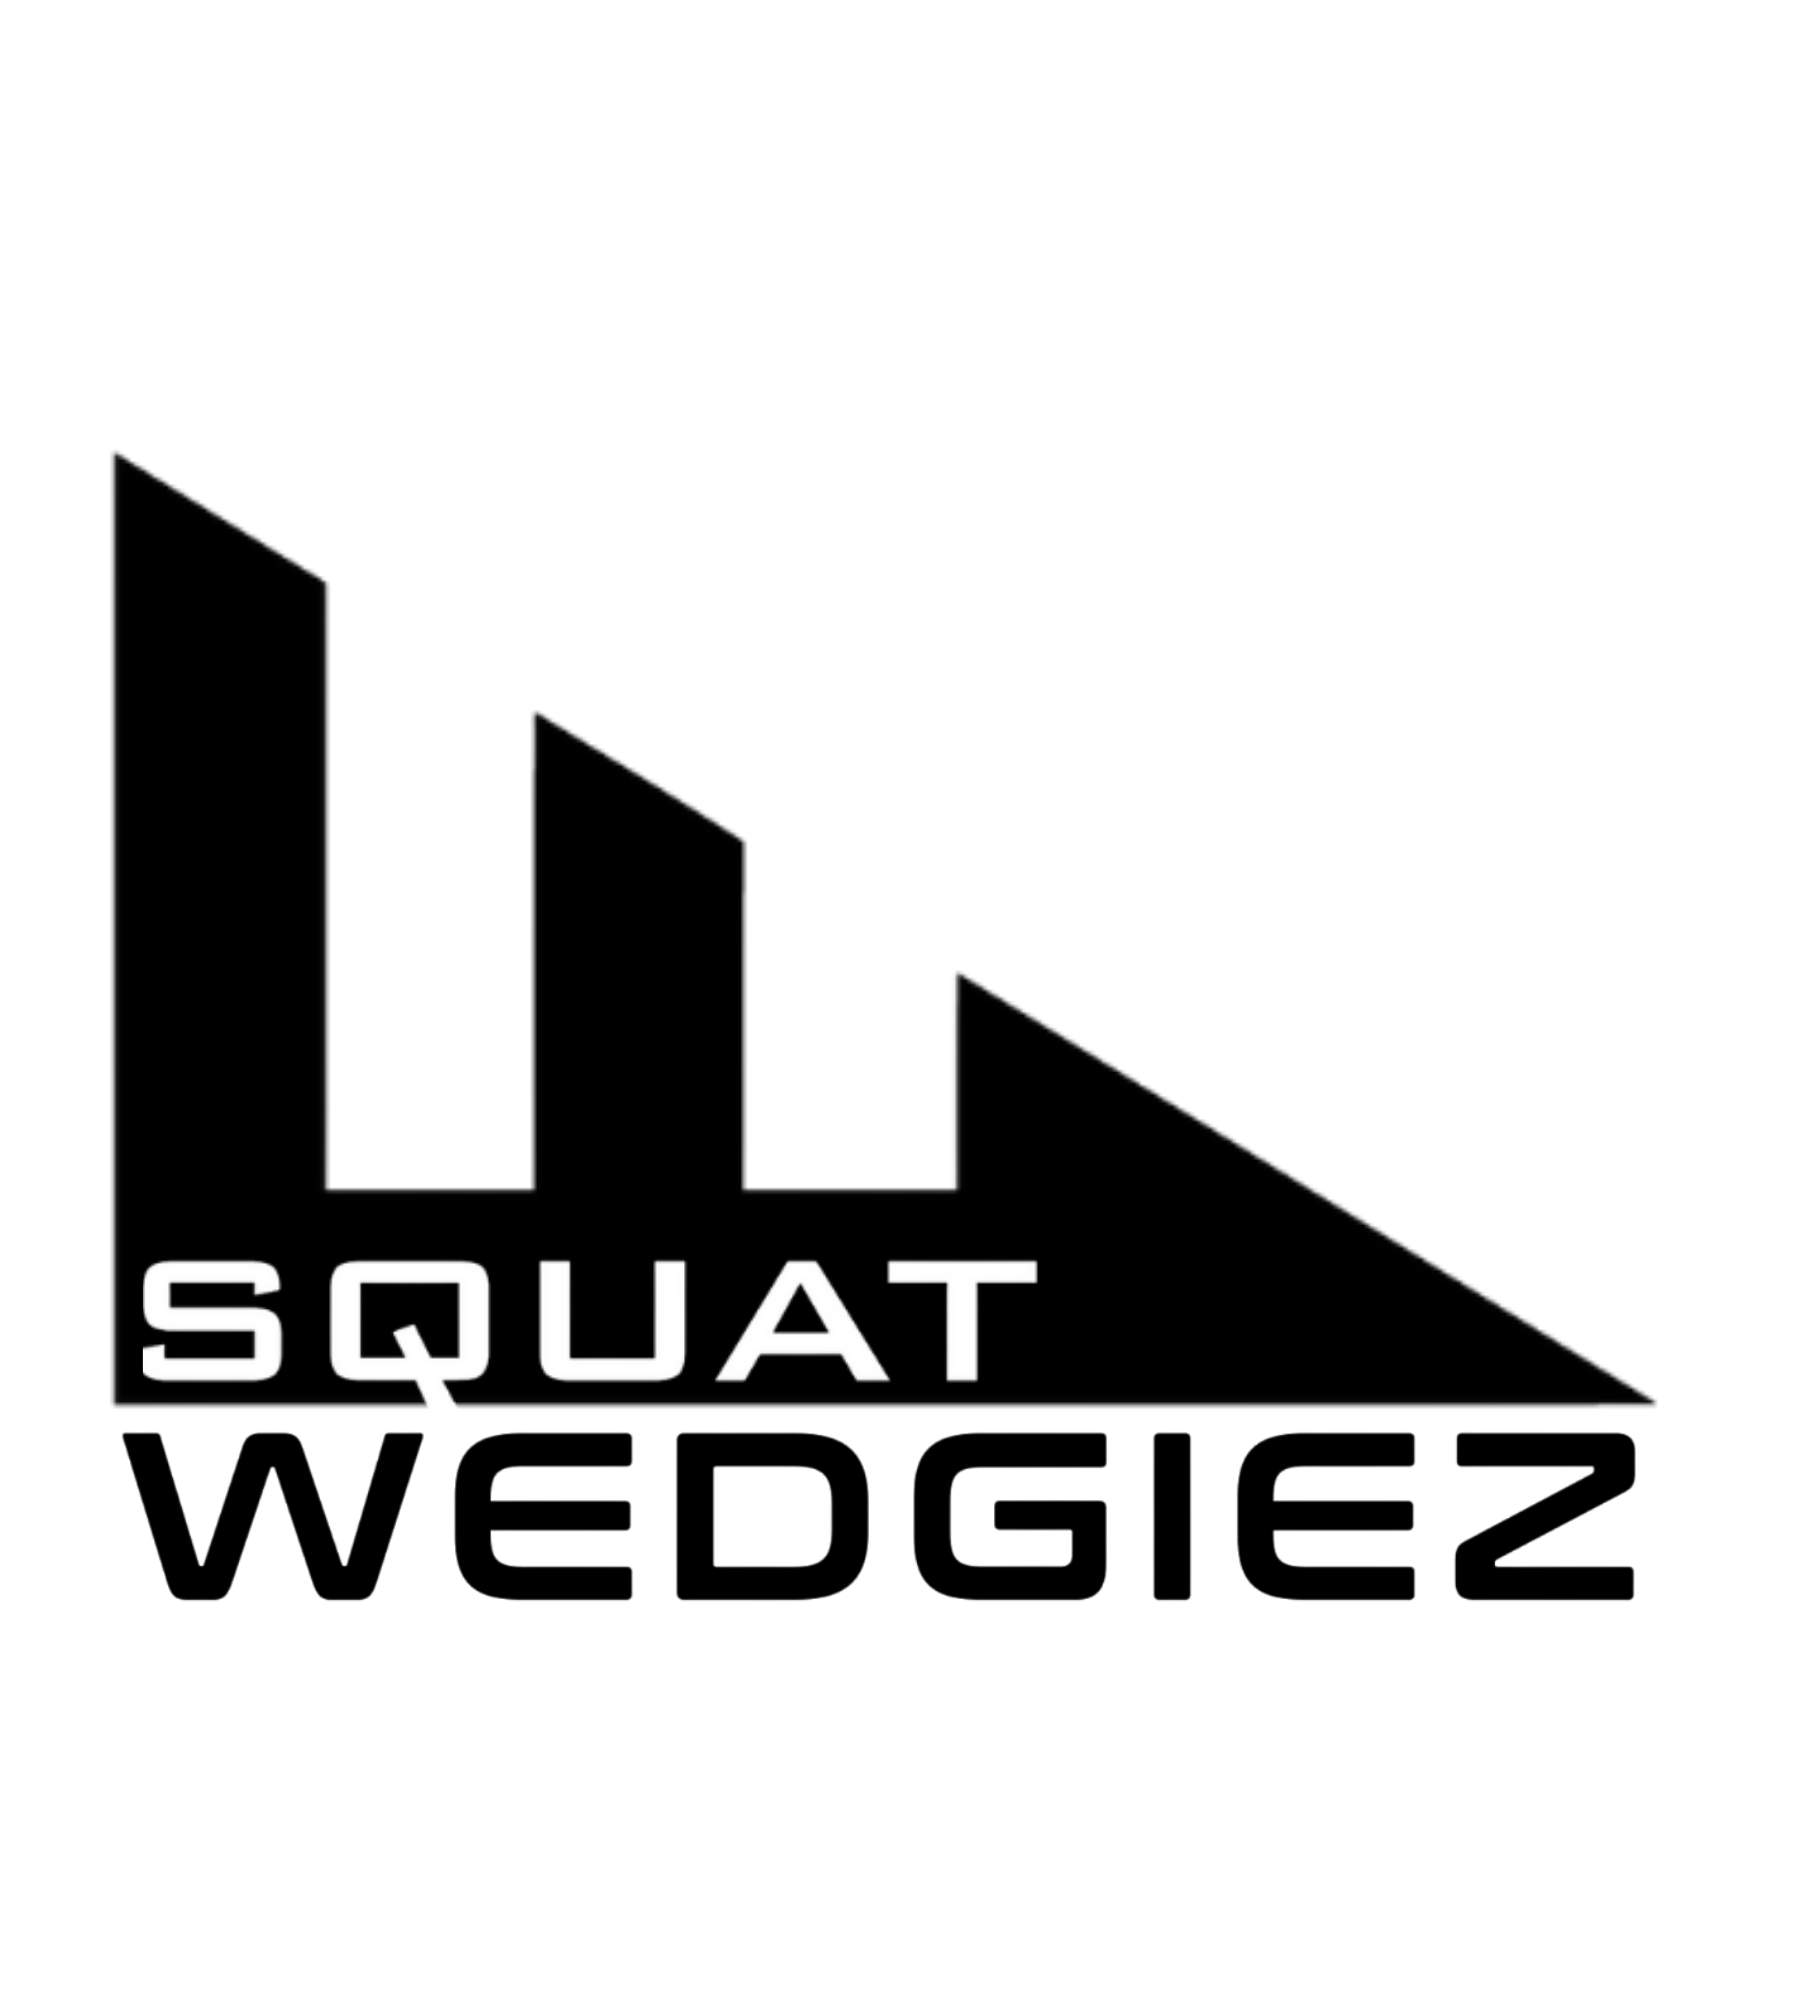 Squat Wedges, Slant Boards